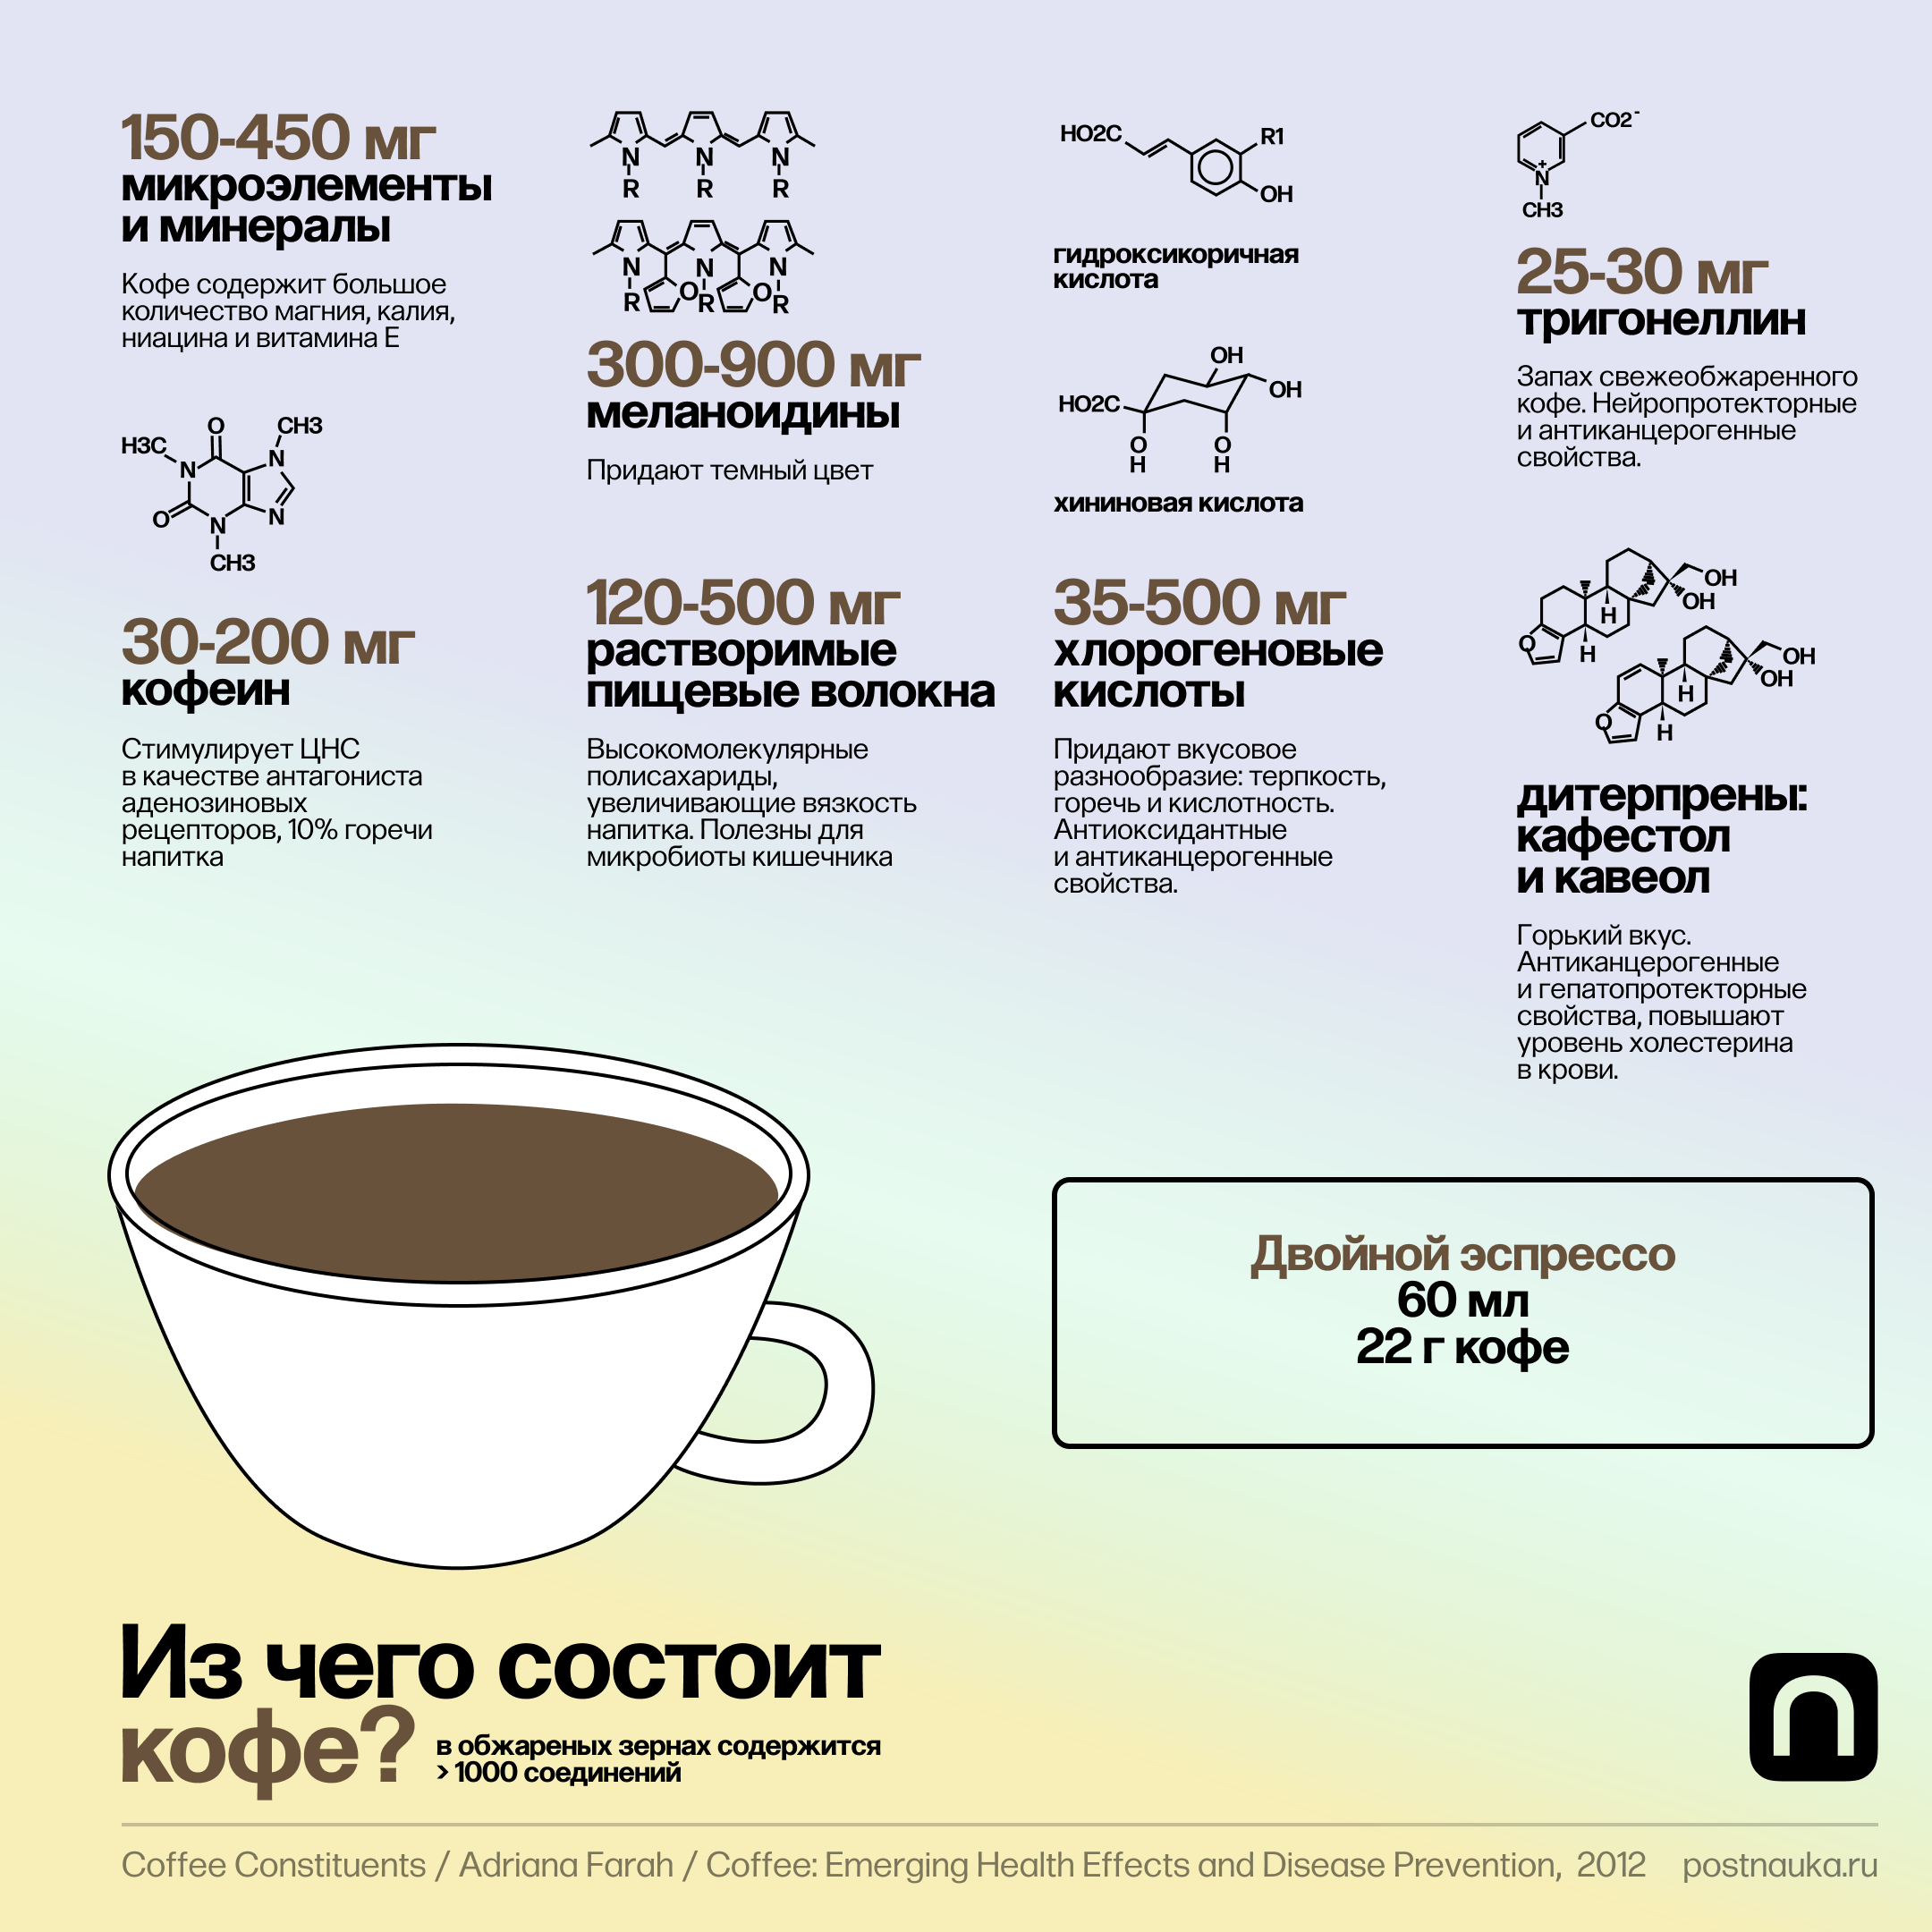 Расход кофе в кофемашине. Разные типы кофе. Разнообразие видов кофе. Из чего состоит кофе. Разнообразие кофейных напитков.